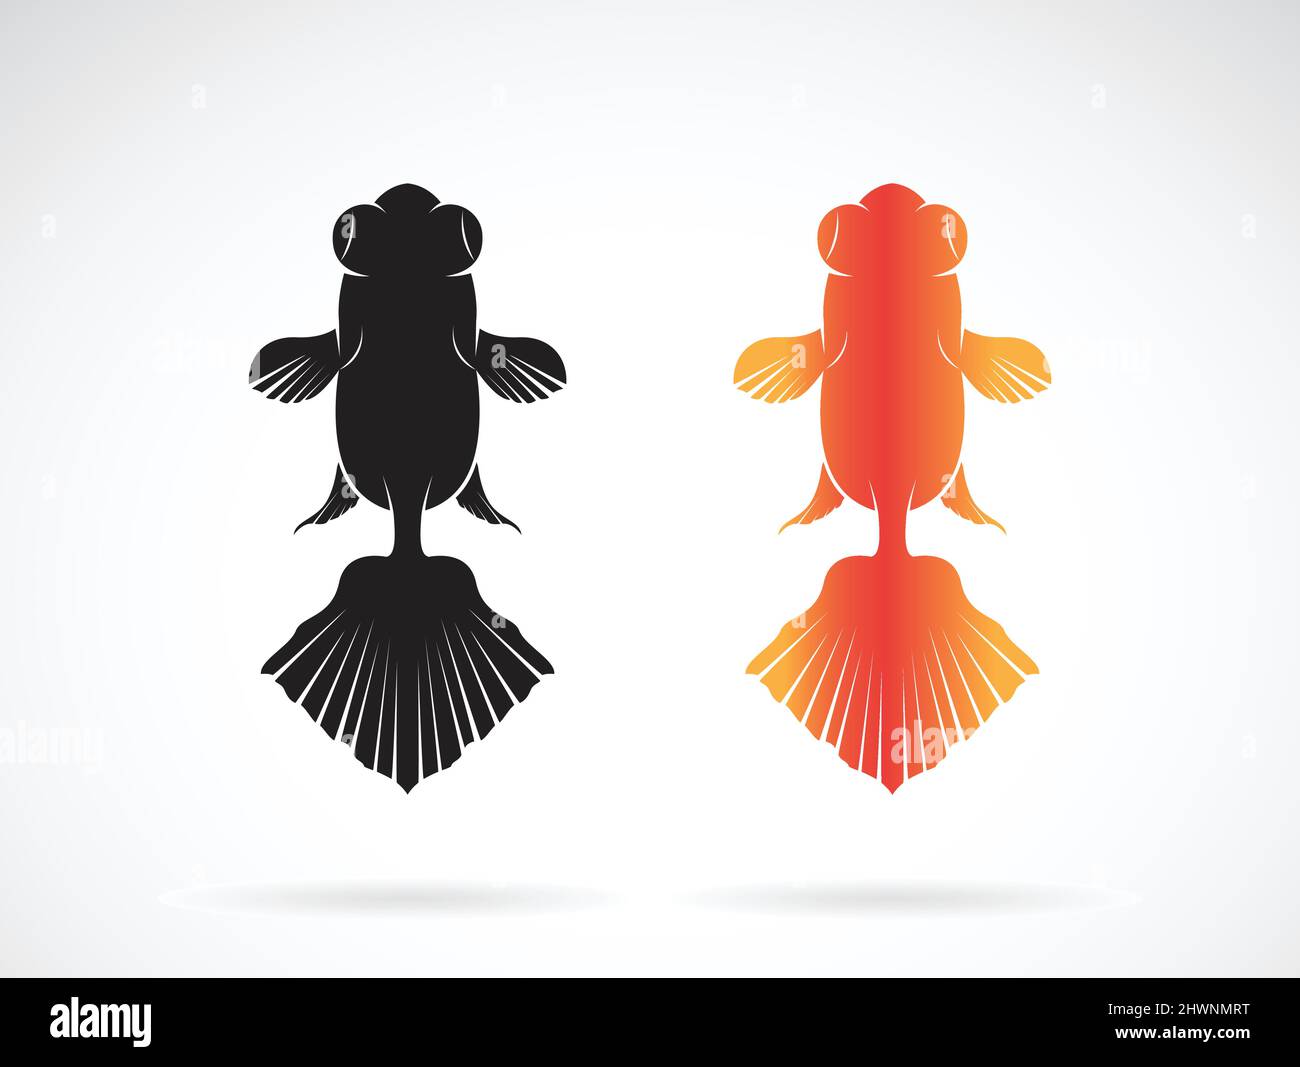 Vecteur de dessin de poissons rouges sur fond blanc., icône poisson., PET. Animaux. Illustration vectorielle superposée facile à modifier. Illustration de Vecteur